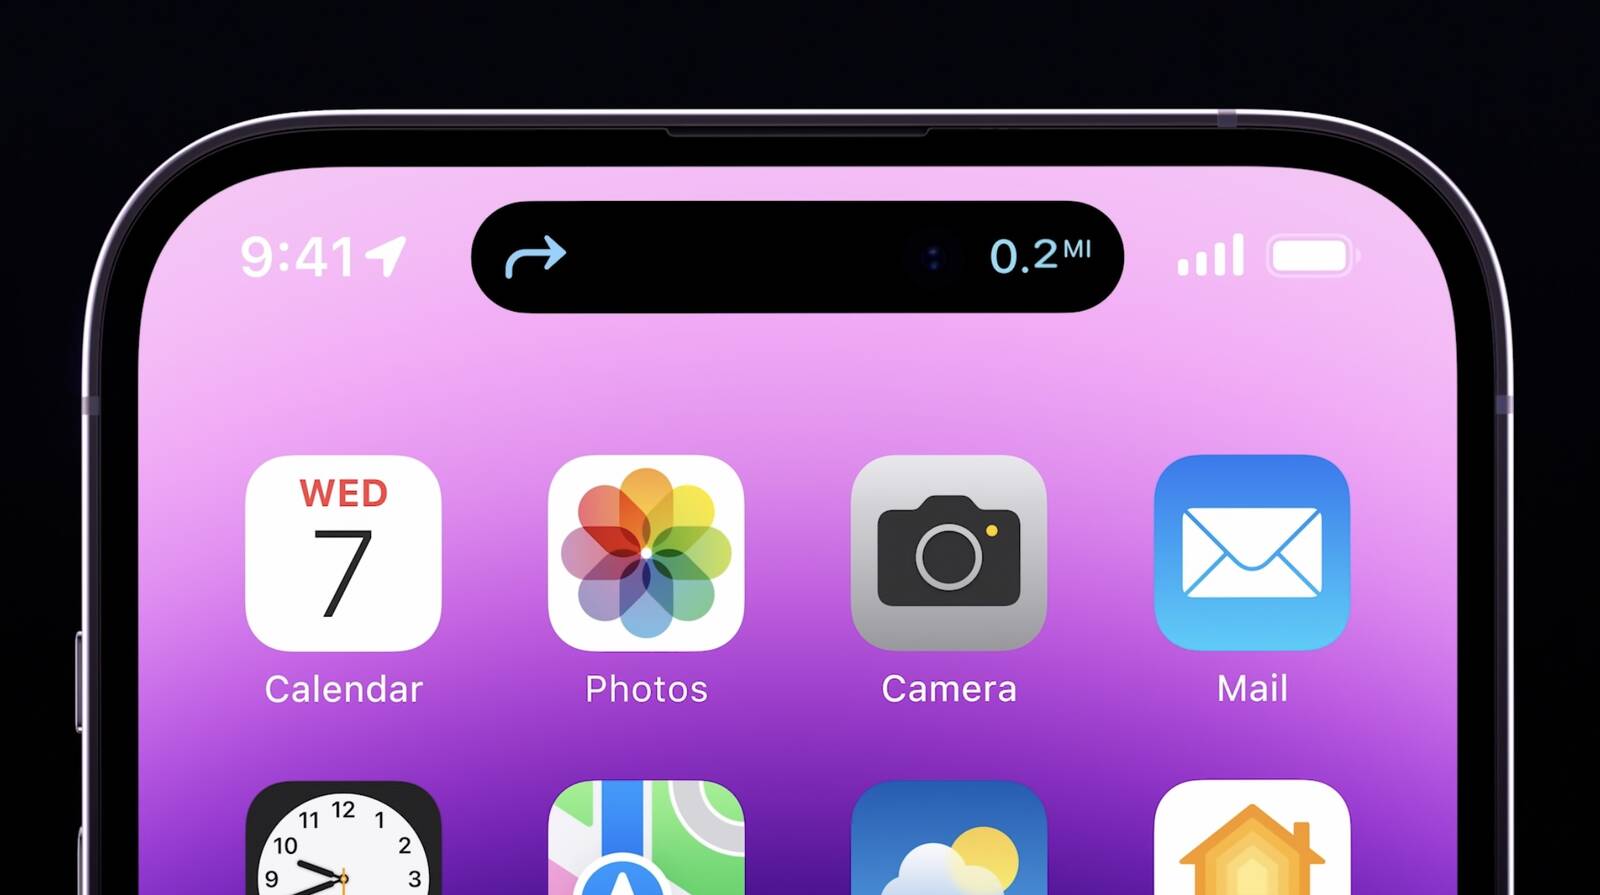 Không chỉ có thể sở hữu thiết kế hoàn hảo, mà còn được trang bị các tính năng vượt trội, chiếc iPhone 14 Pro Max màu tím sẽ khiến bạn rơi vào cuộc tình đầu từ cái nhìn đầu tiên. Hãy ấn vào bức ảnh để trải nghiệm trọn vẹn sự hoàn hảo của em nó ngay nào!